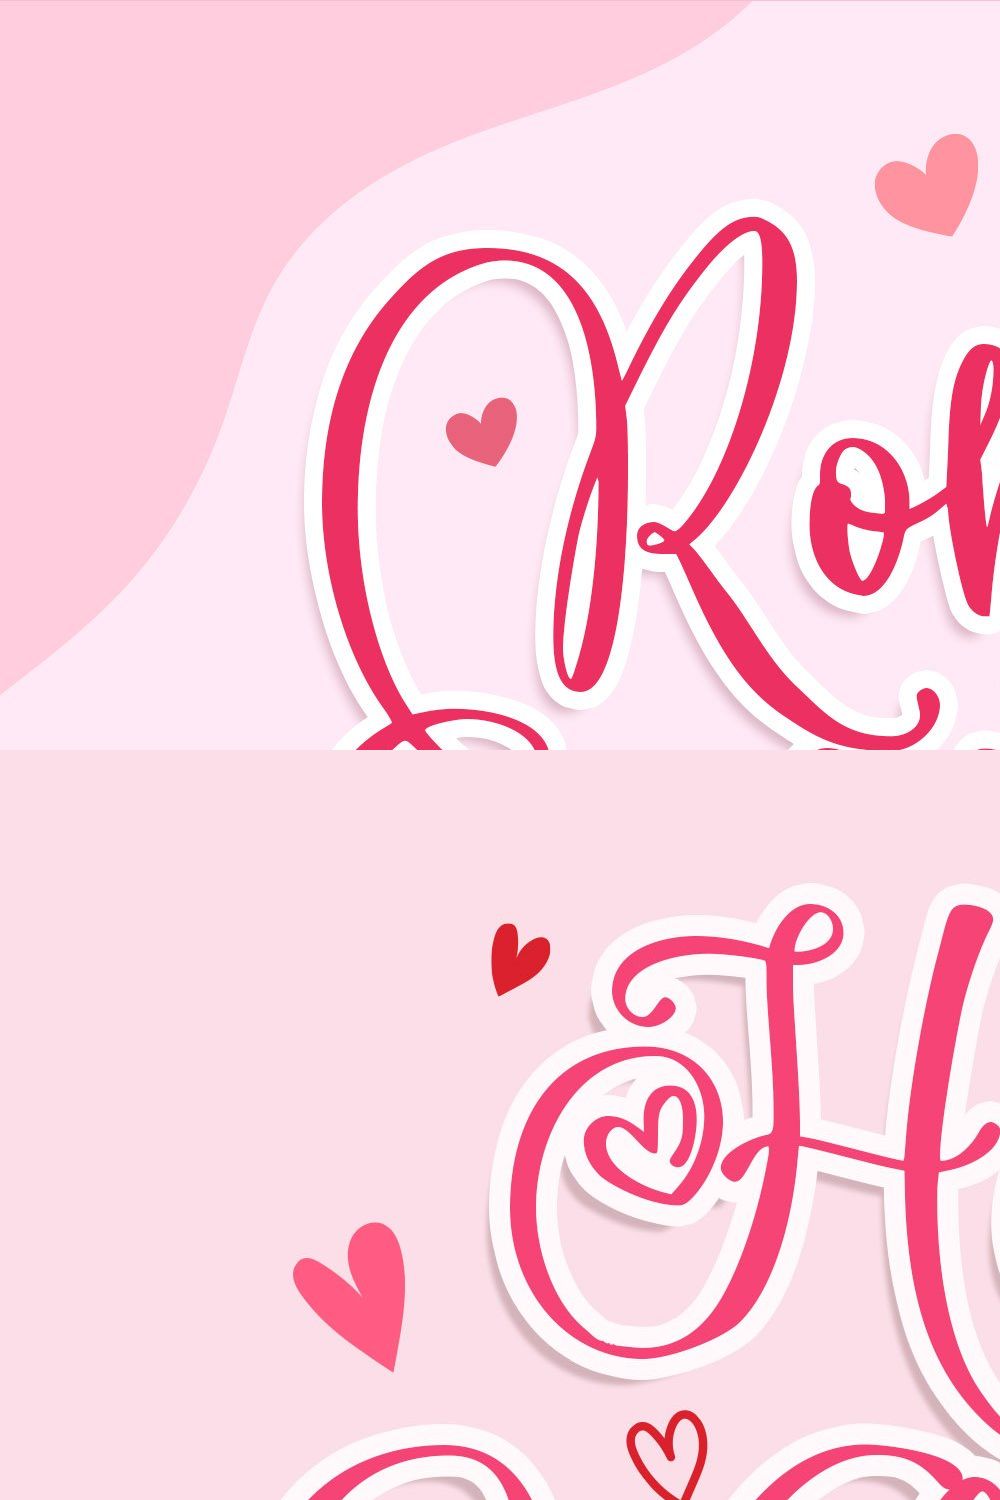 Romantic Heart - Script Font pinterest preview image.